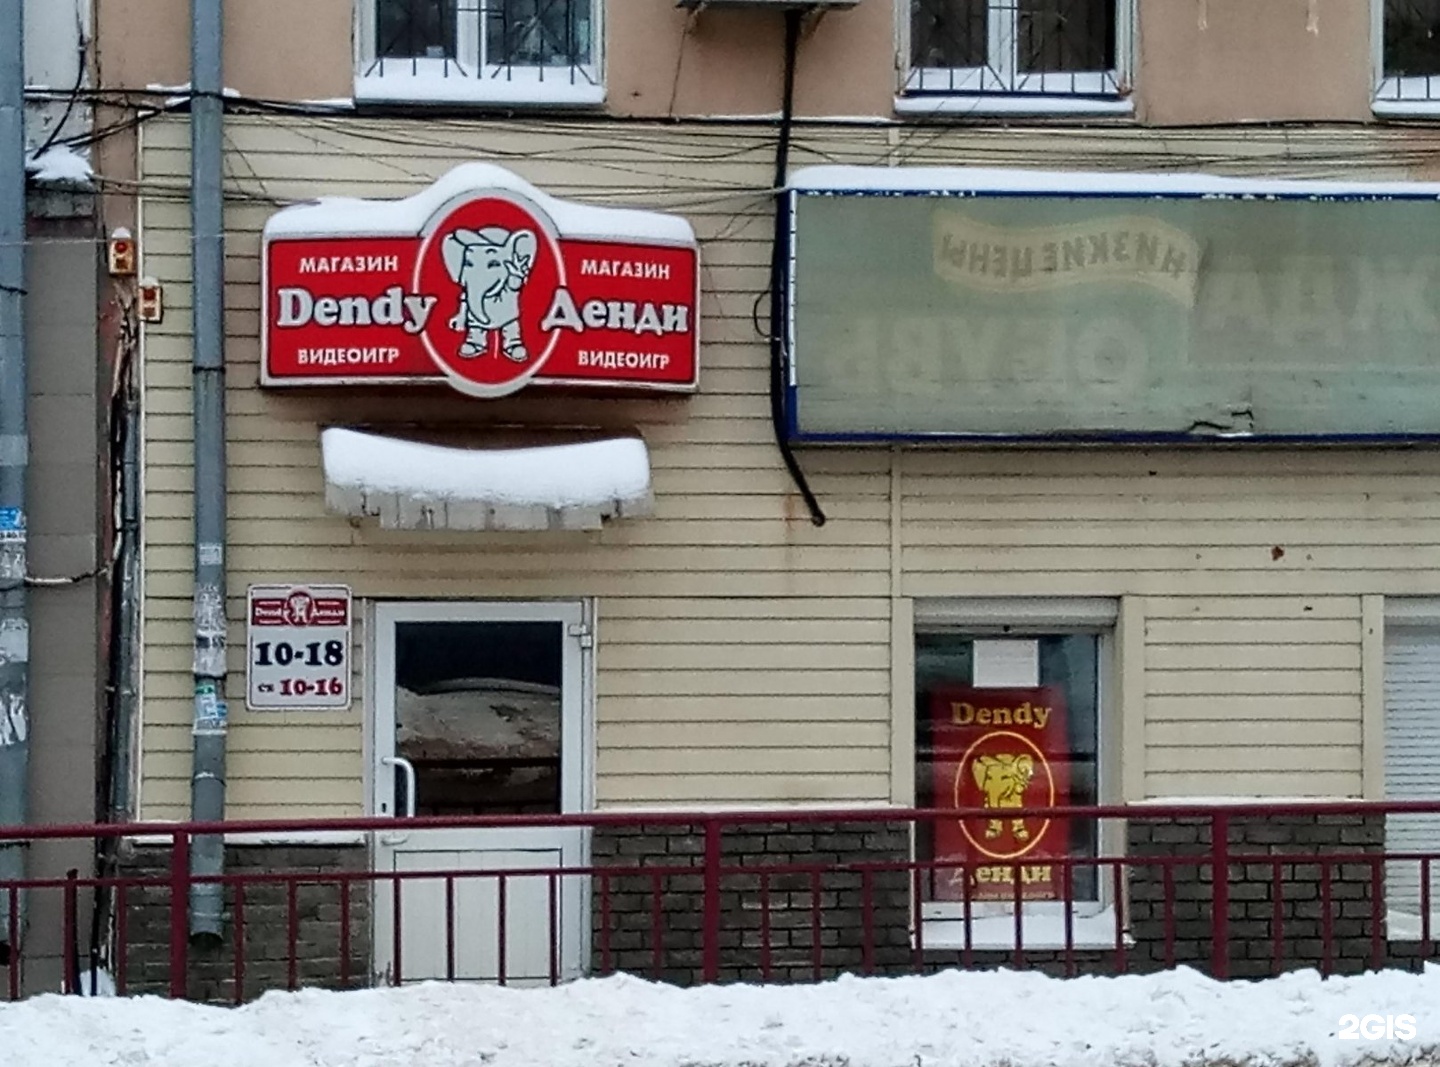 Магазин Денди в Нижнем Новгороде